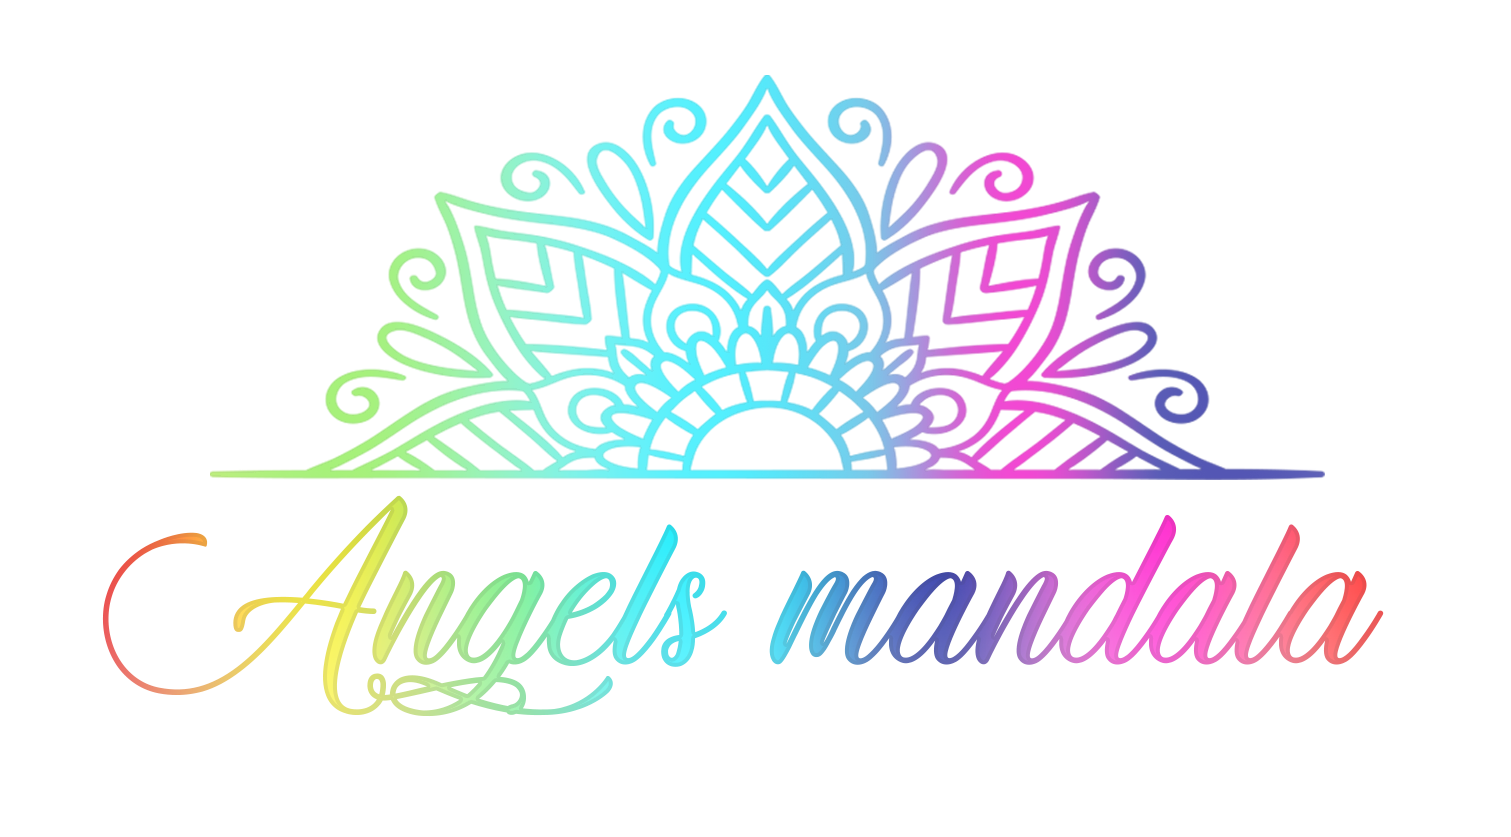 Angels mandala